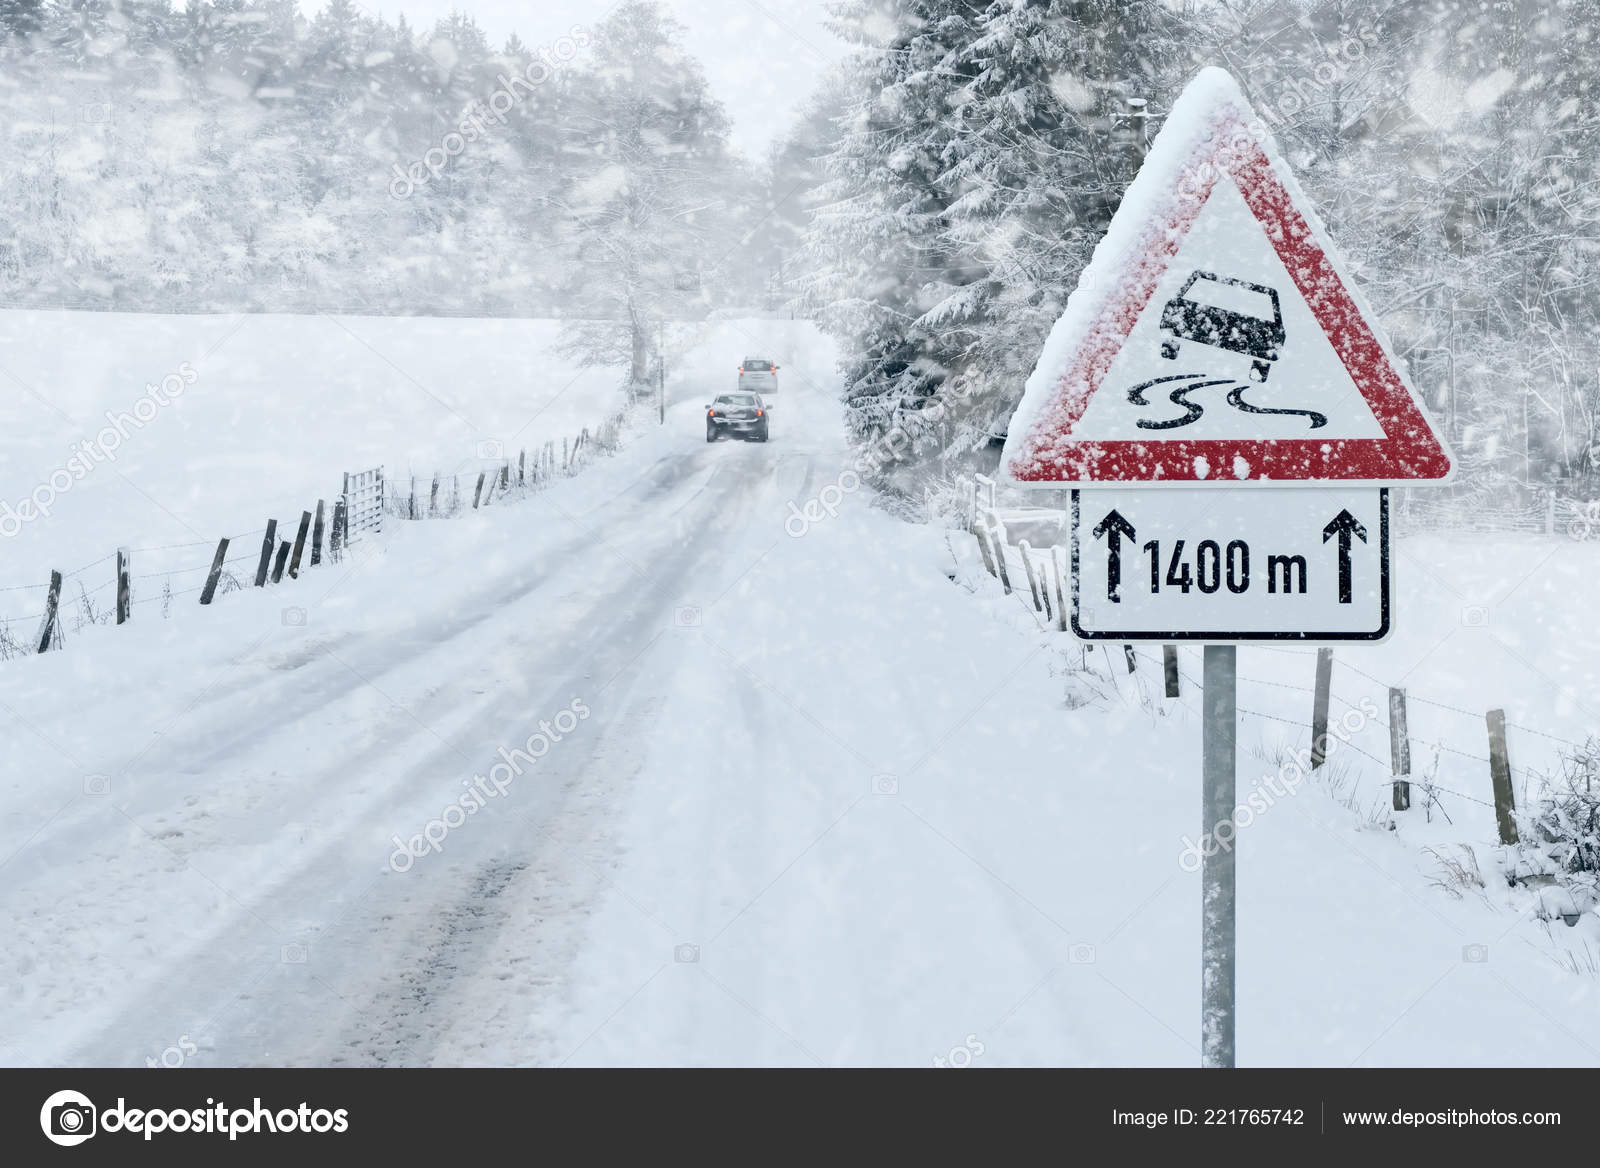 Warnschild Unfall und Warnleuchte an einer Straße mit Schneematsch.